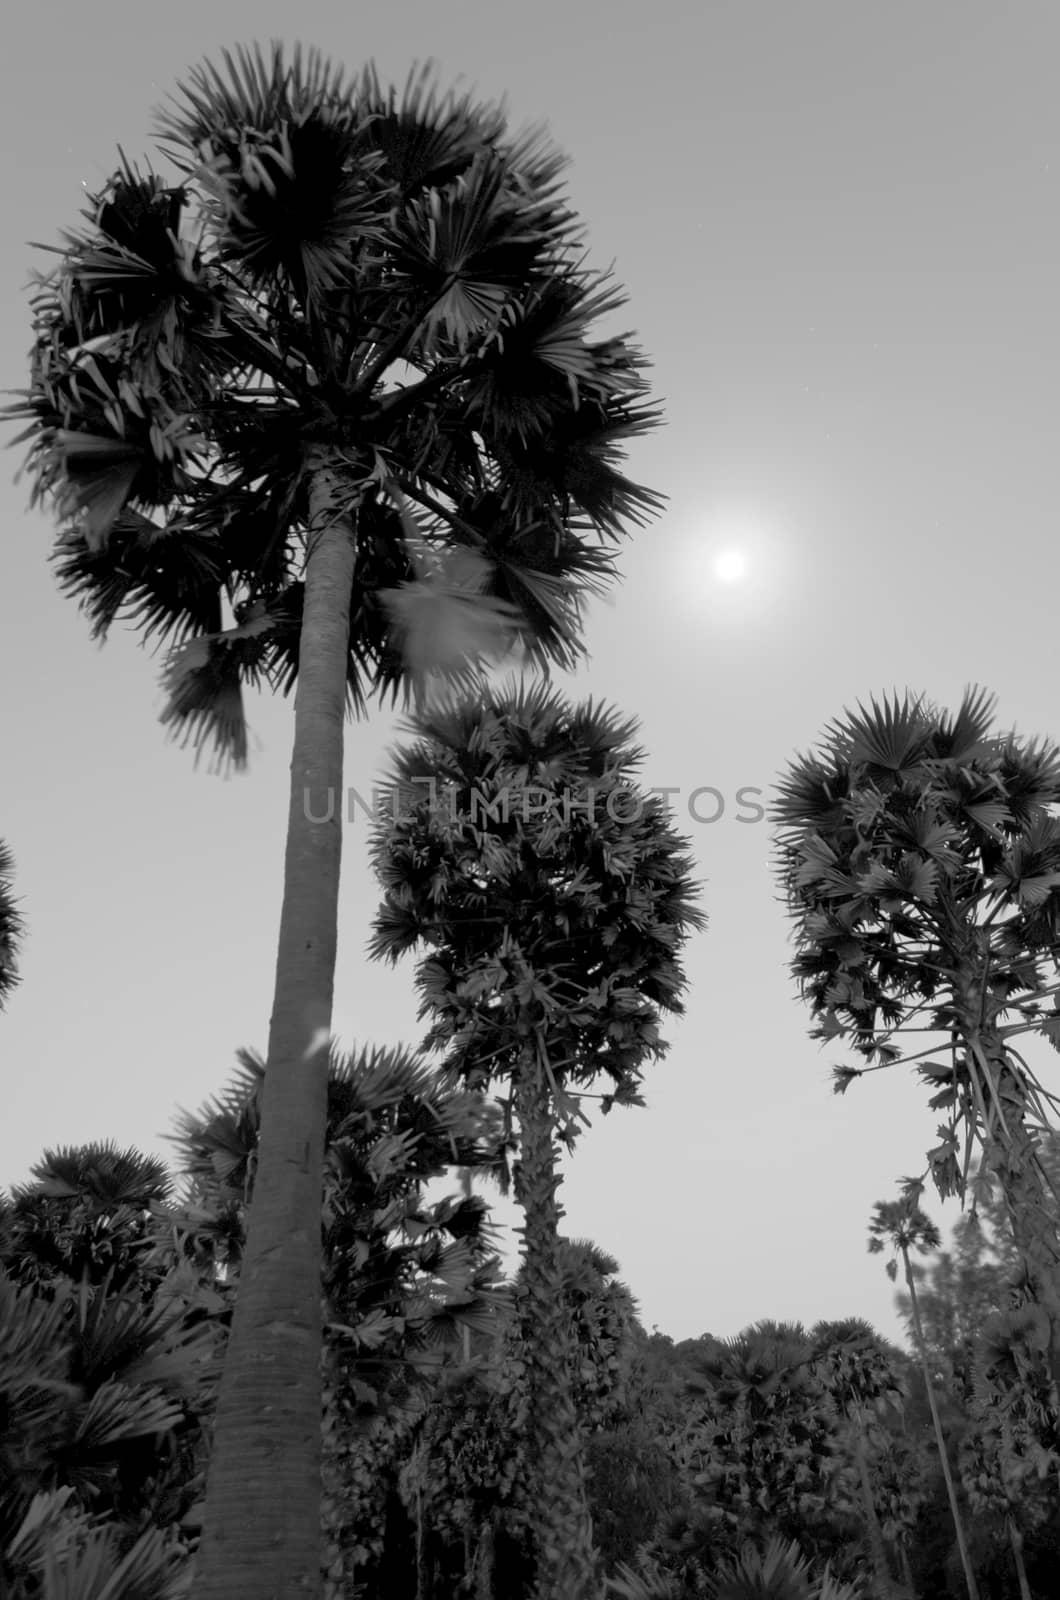 Sugar Palm Tree under the Moon at night by kobfujar